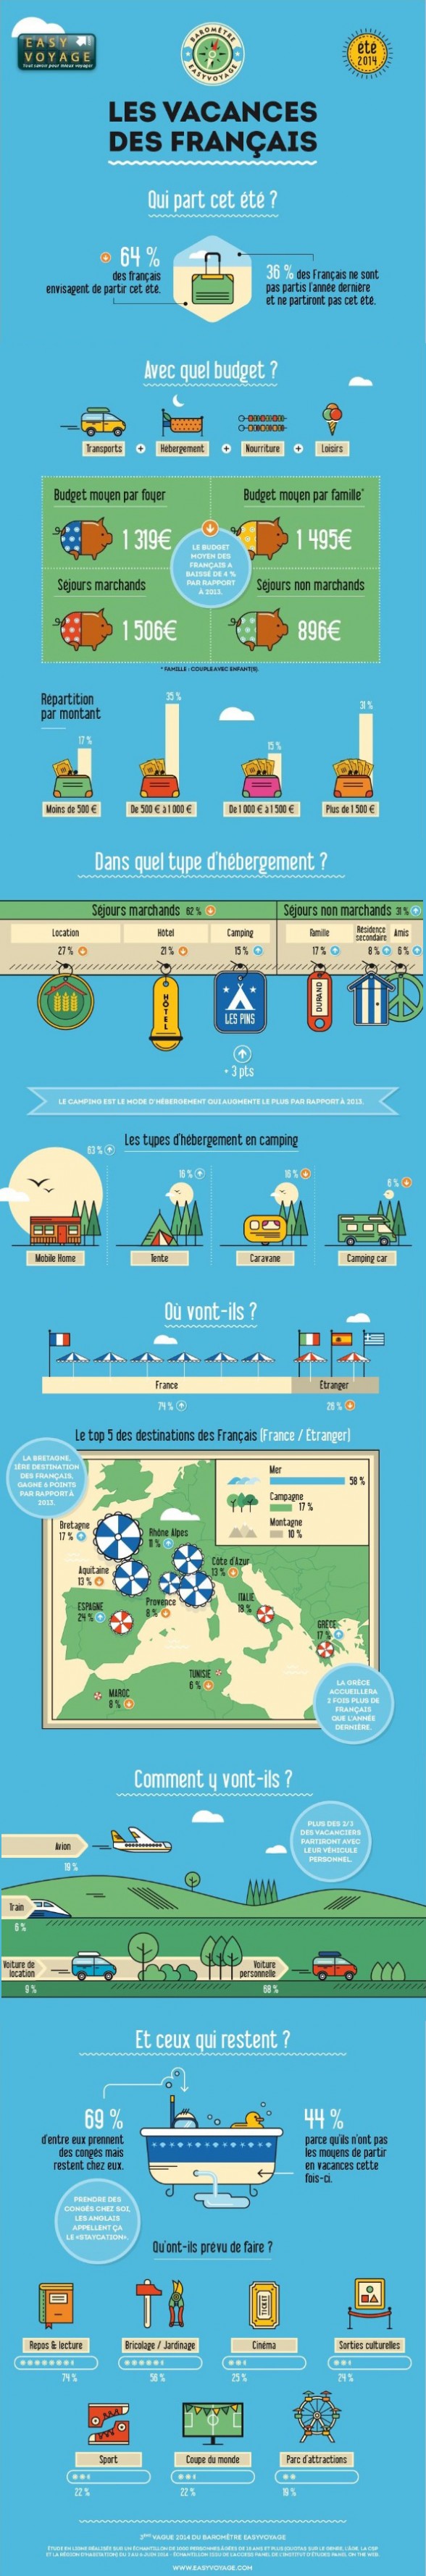 infographie : les vacances des Français